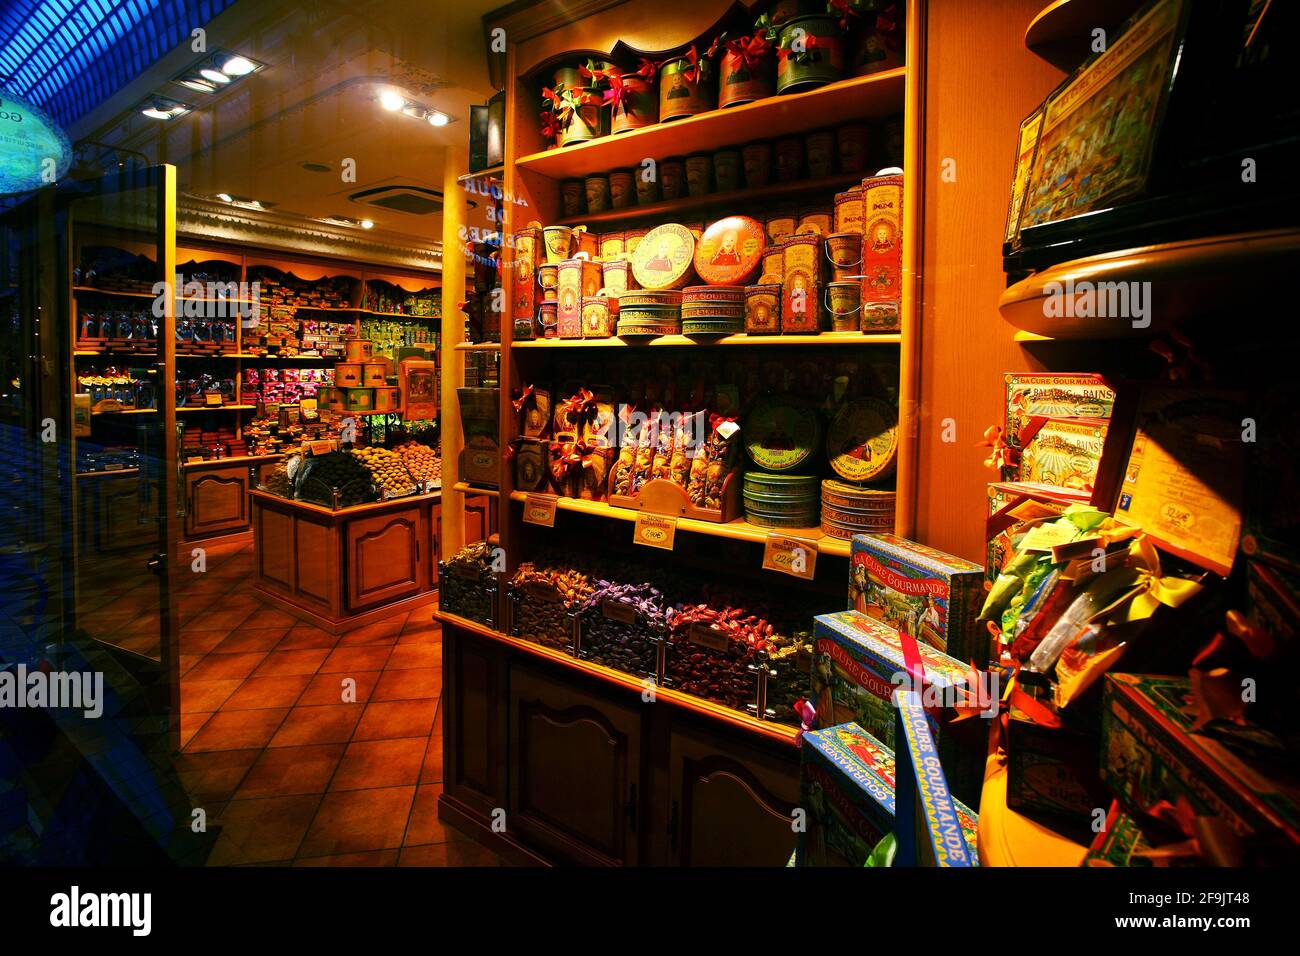 Einkaufstour in einem nostalgischen Ladengeschäft mit Süßen Leckereien, Bonbons und pralinés als Geschenk oder zum sofortigen vernaschen. Foto Stock